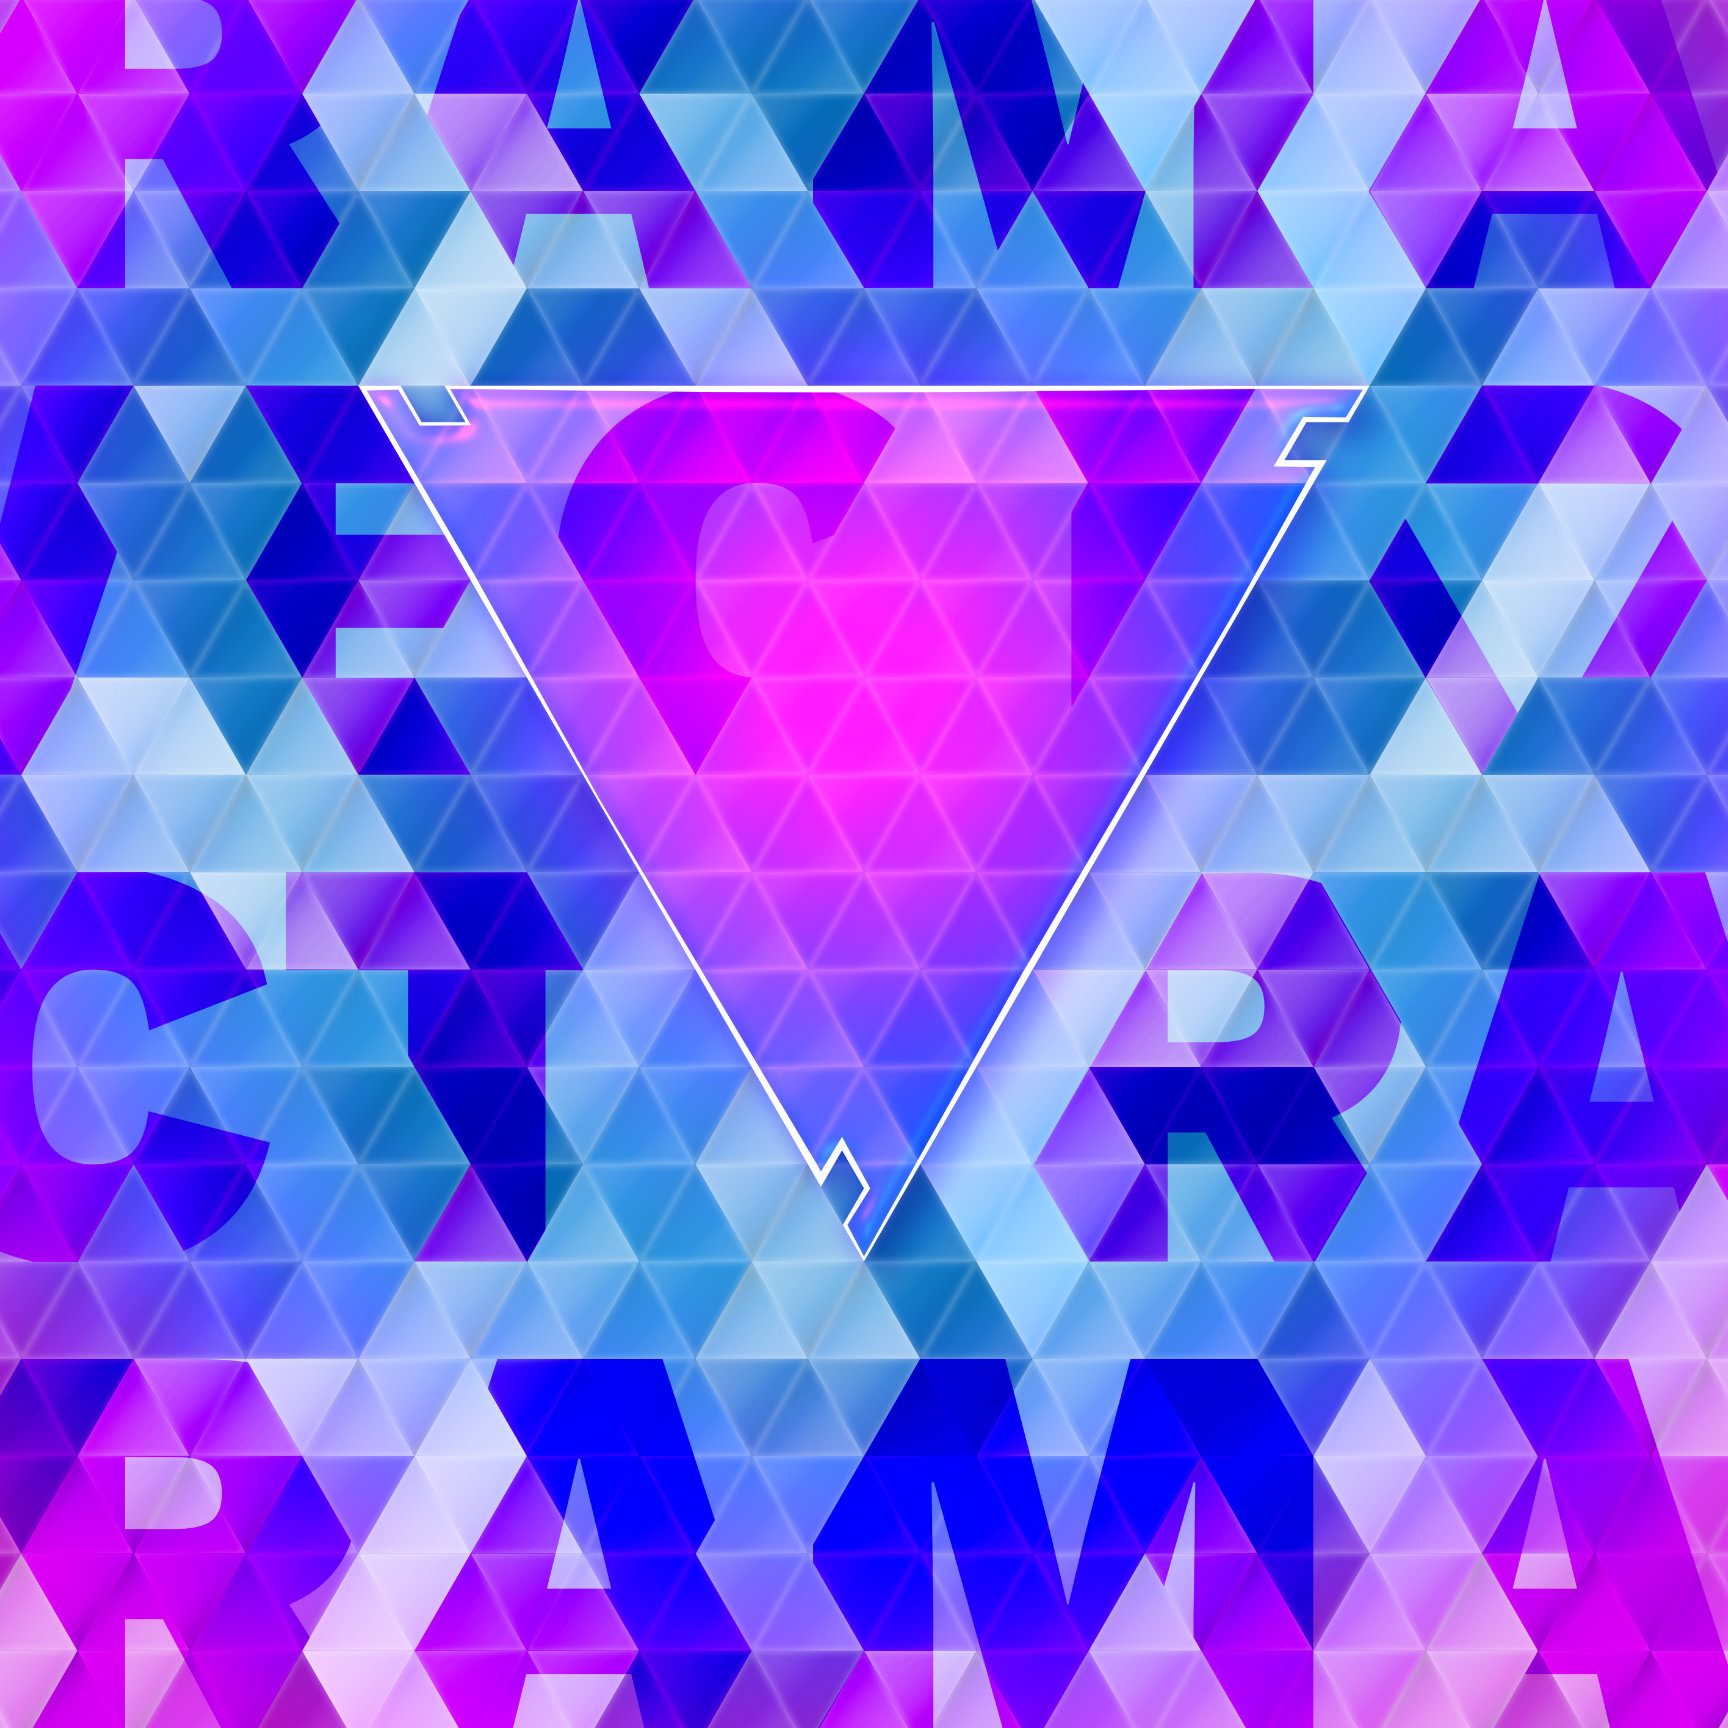 Idea for event theme: Triangles